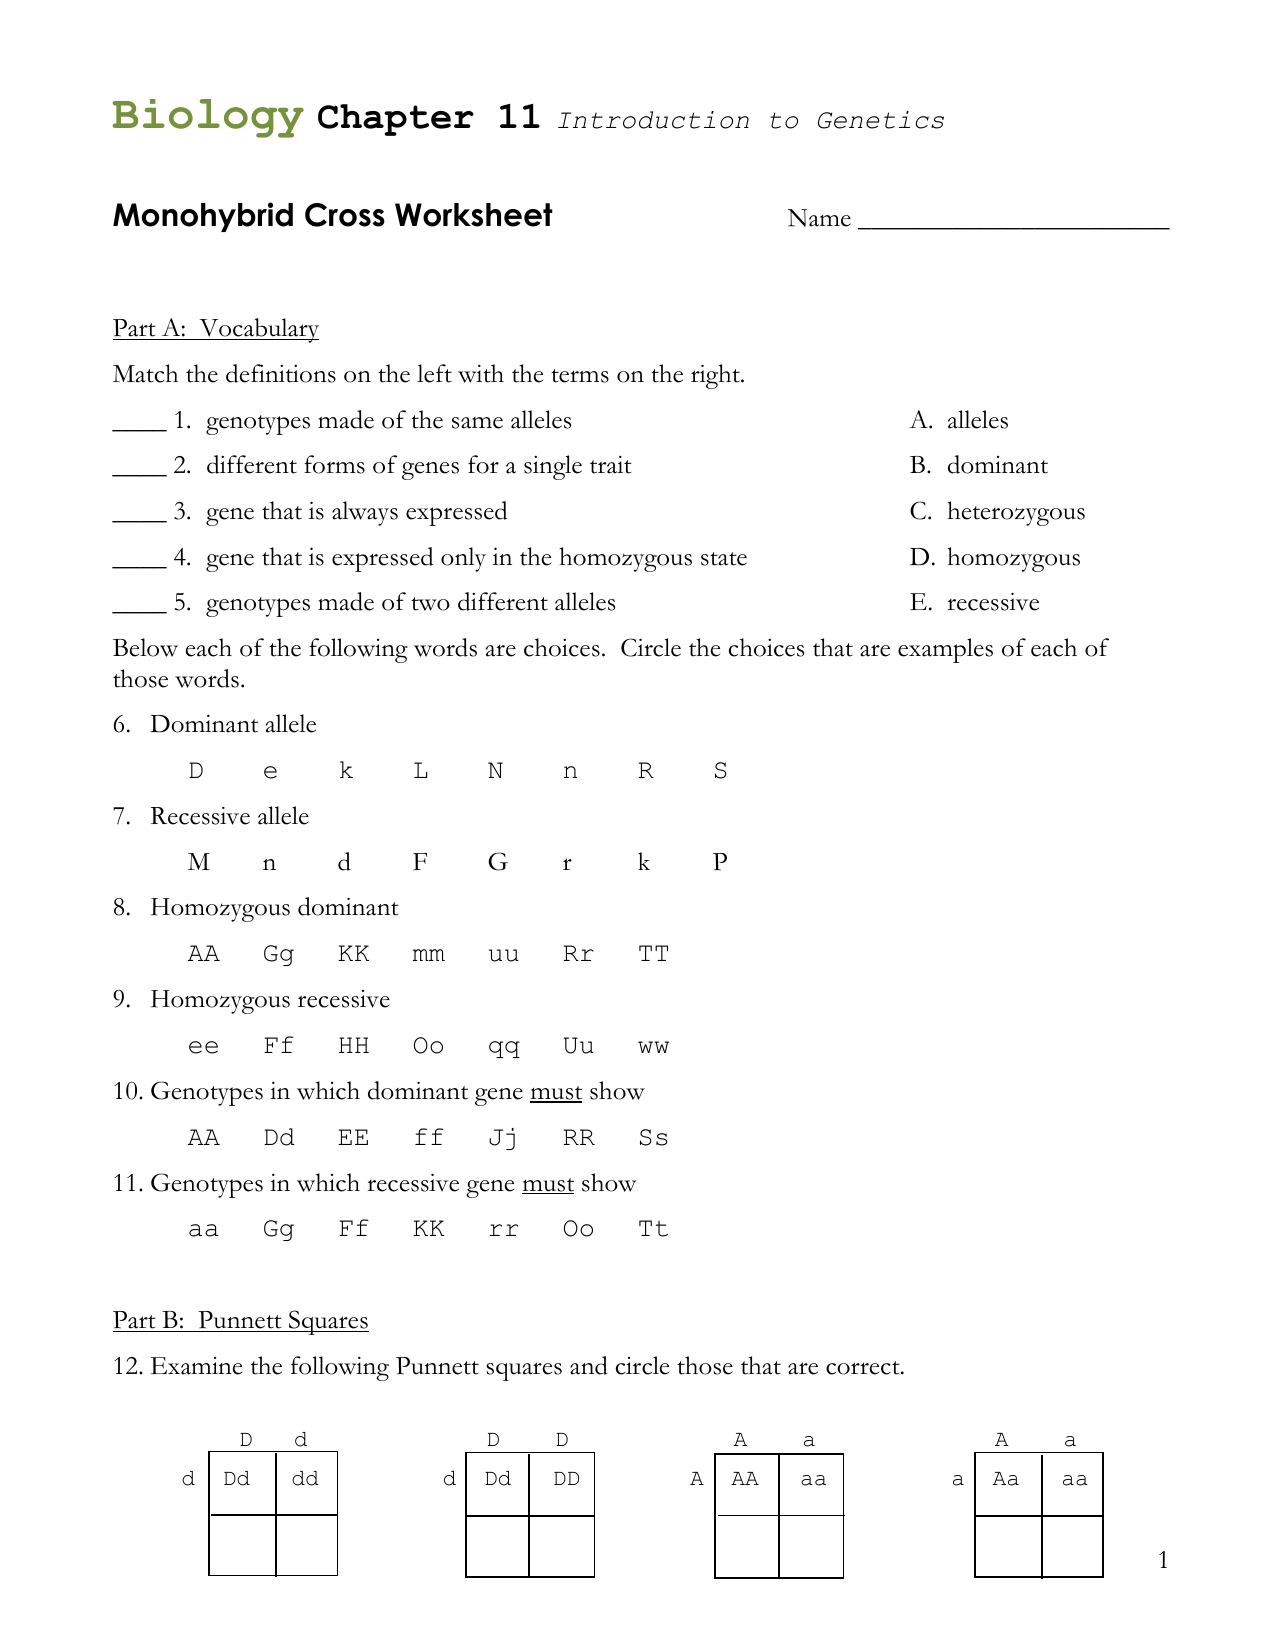 Monohybrid Cross Problems For Monohybrid Crosses Worksheet Answers